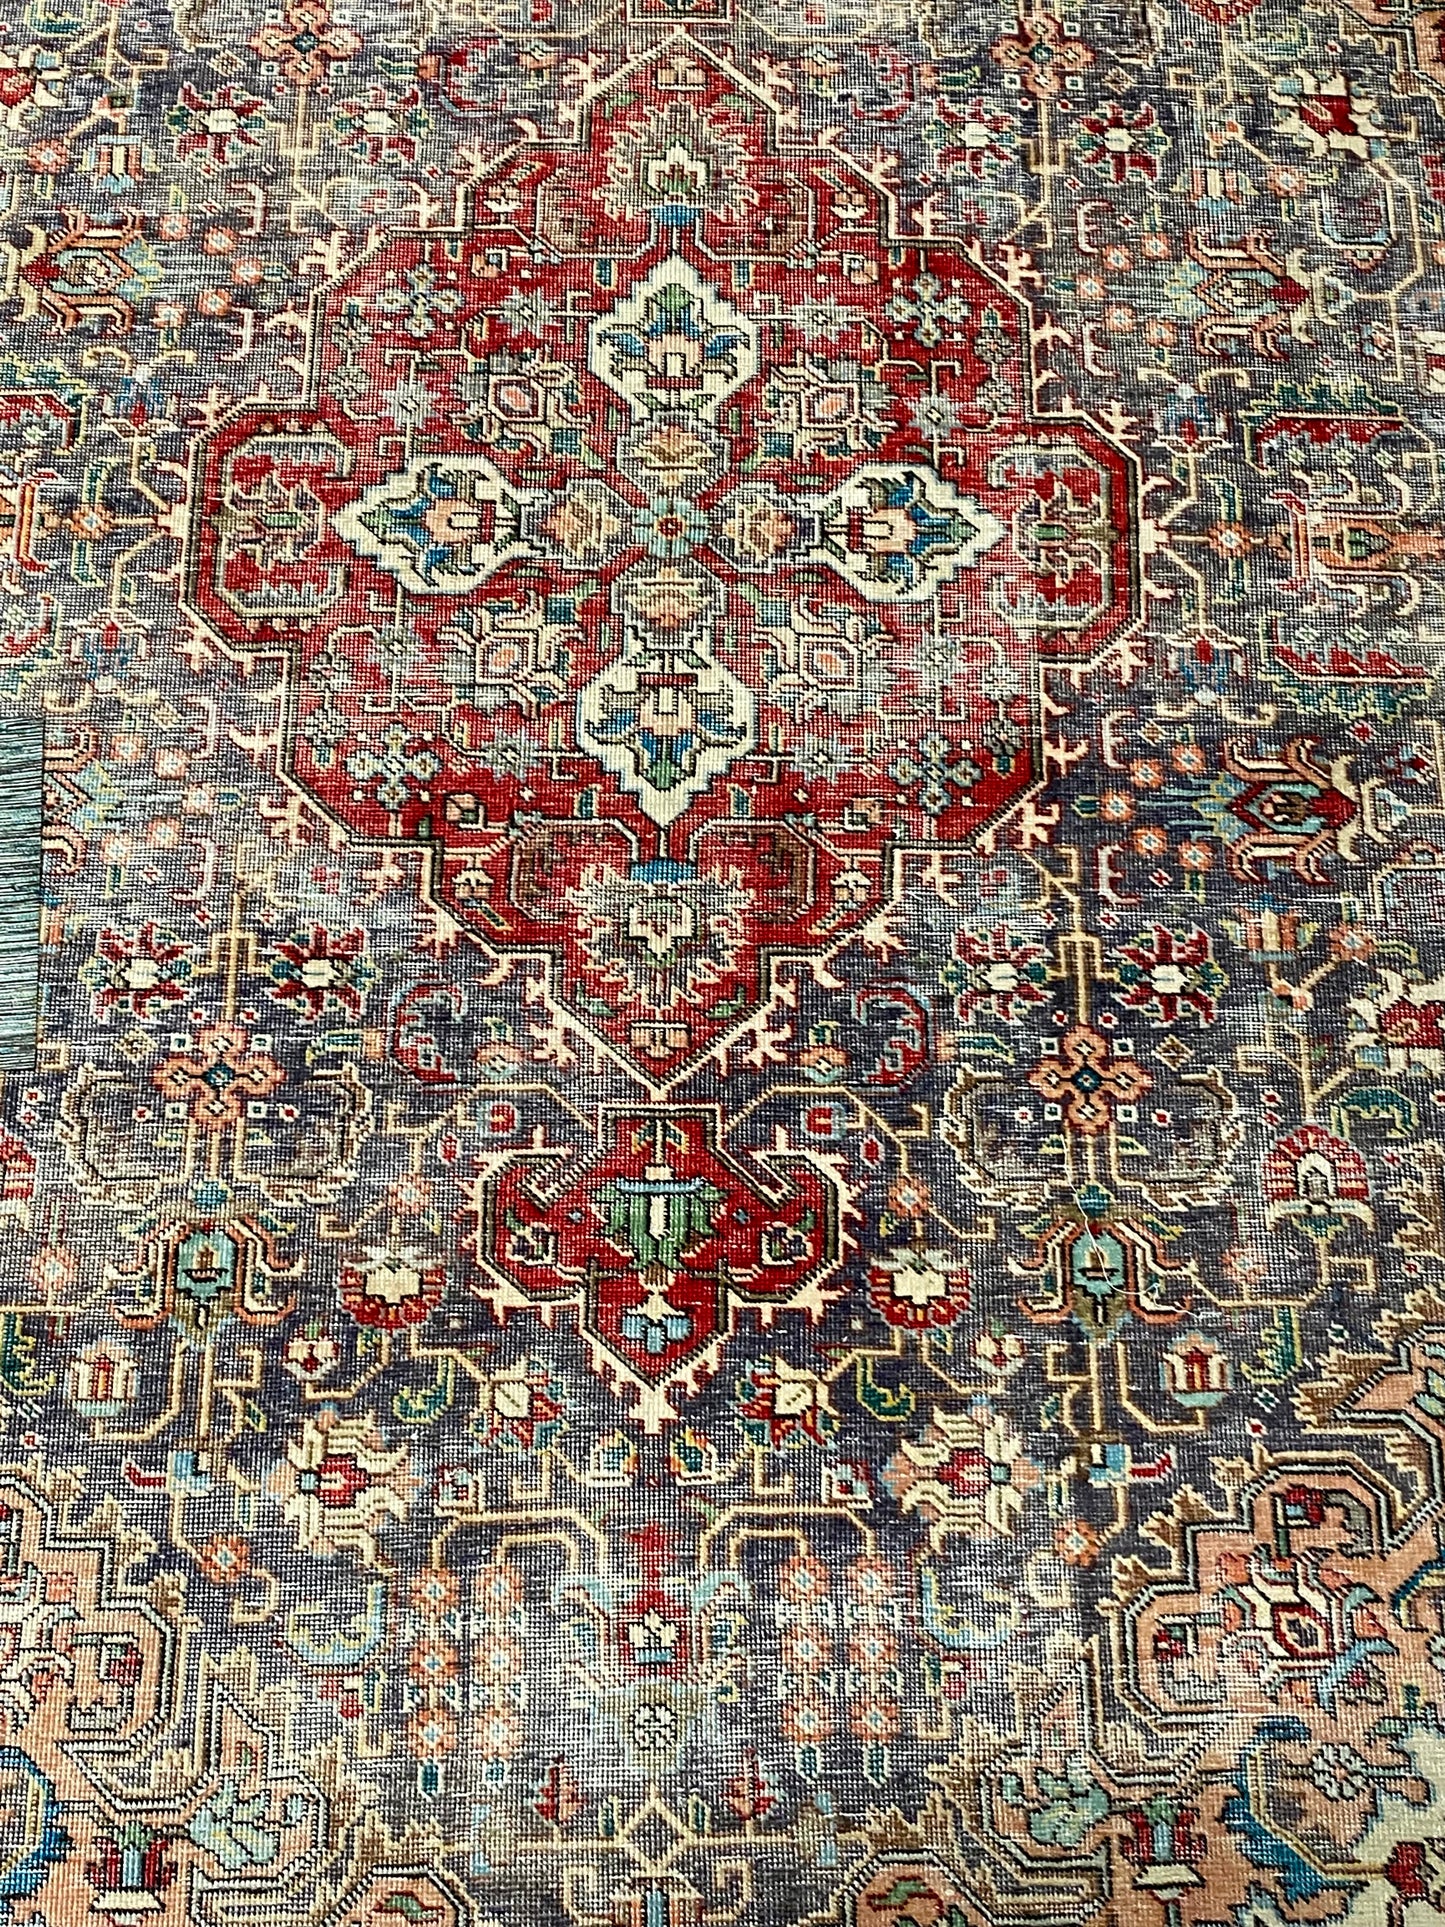 Original Antique Red Persian Rug